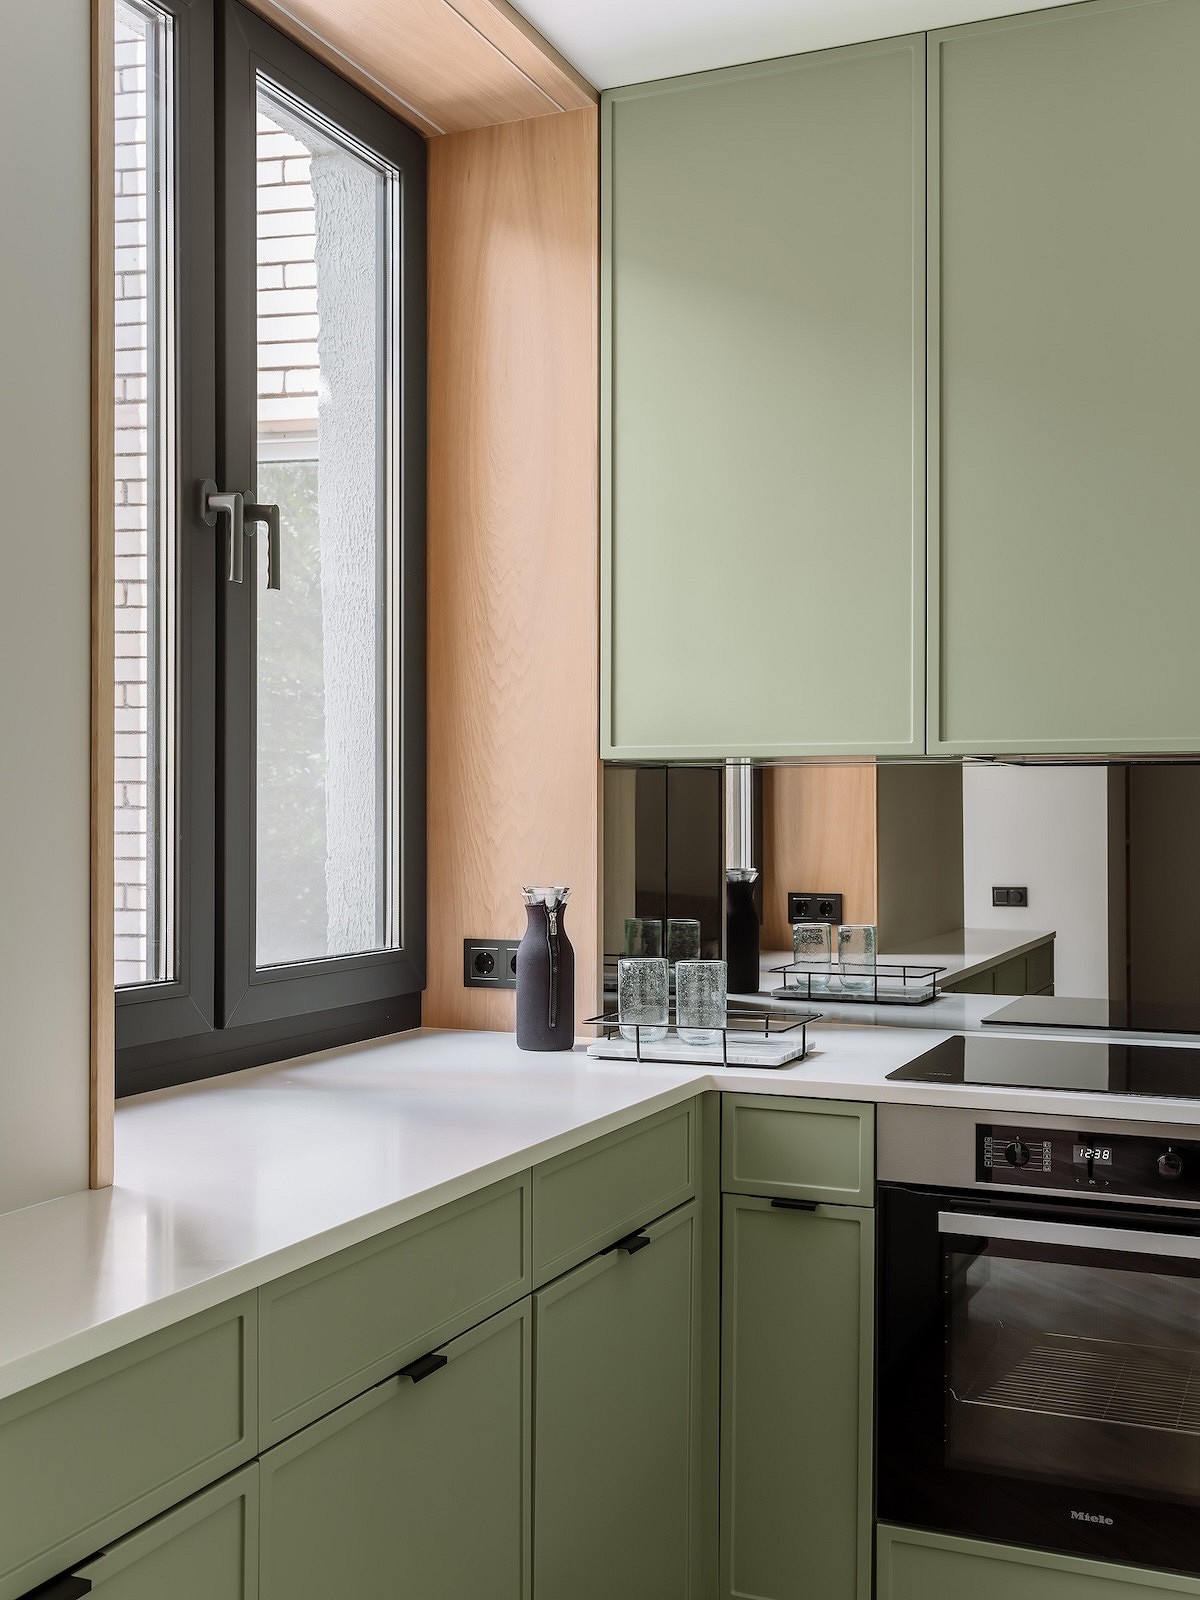 Зеркала, много зелени и ощущение загородного дома: квартира 71 кв. м в районе Патриарших прудов (фото до и после переделки)20